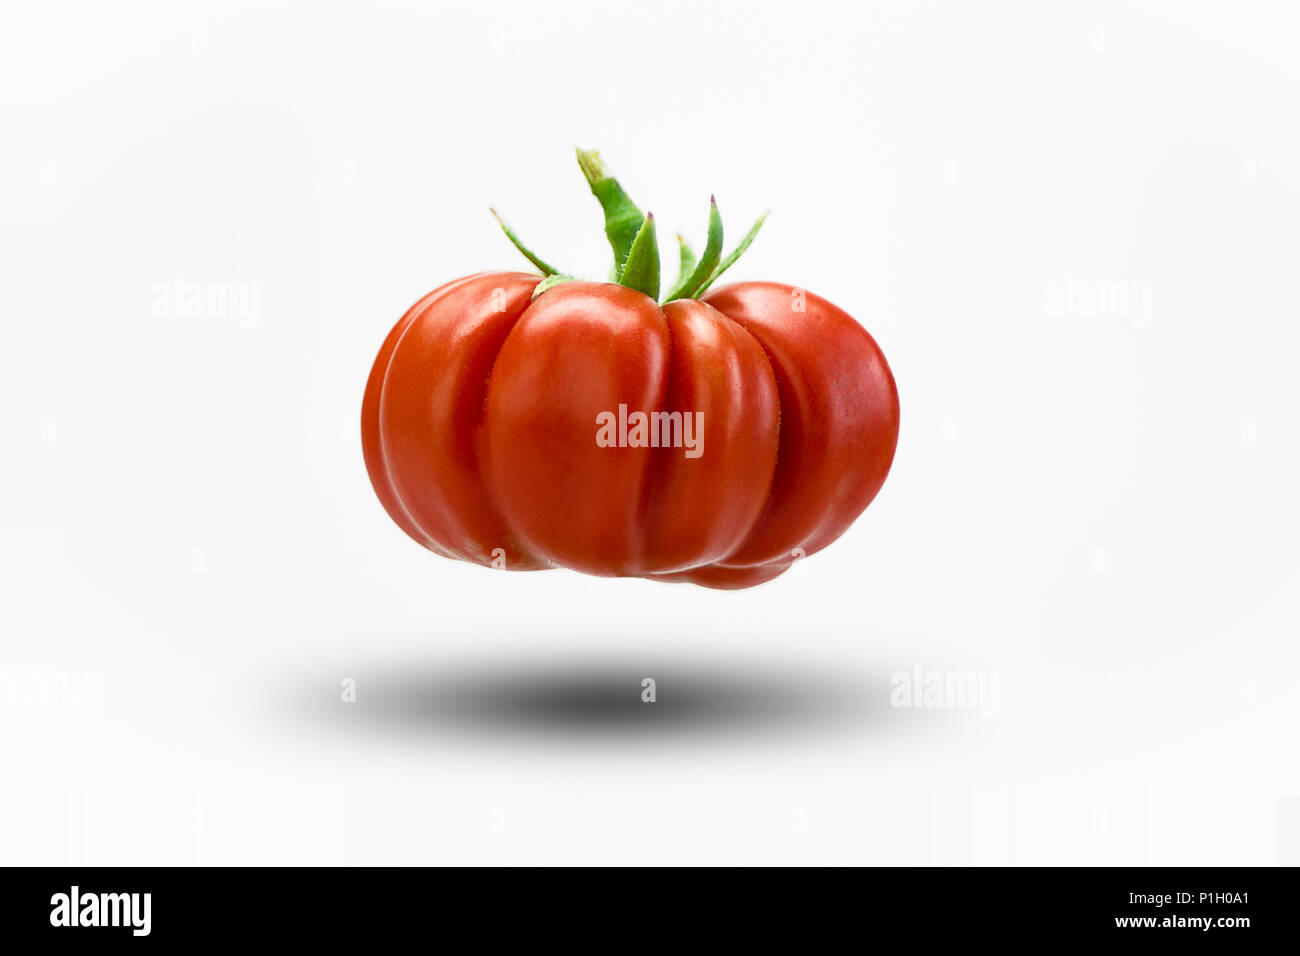 Sicilian organic red tomato Stock Photo